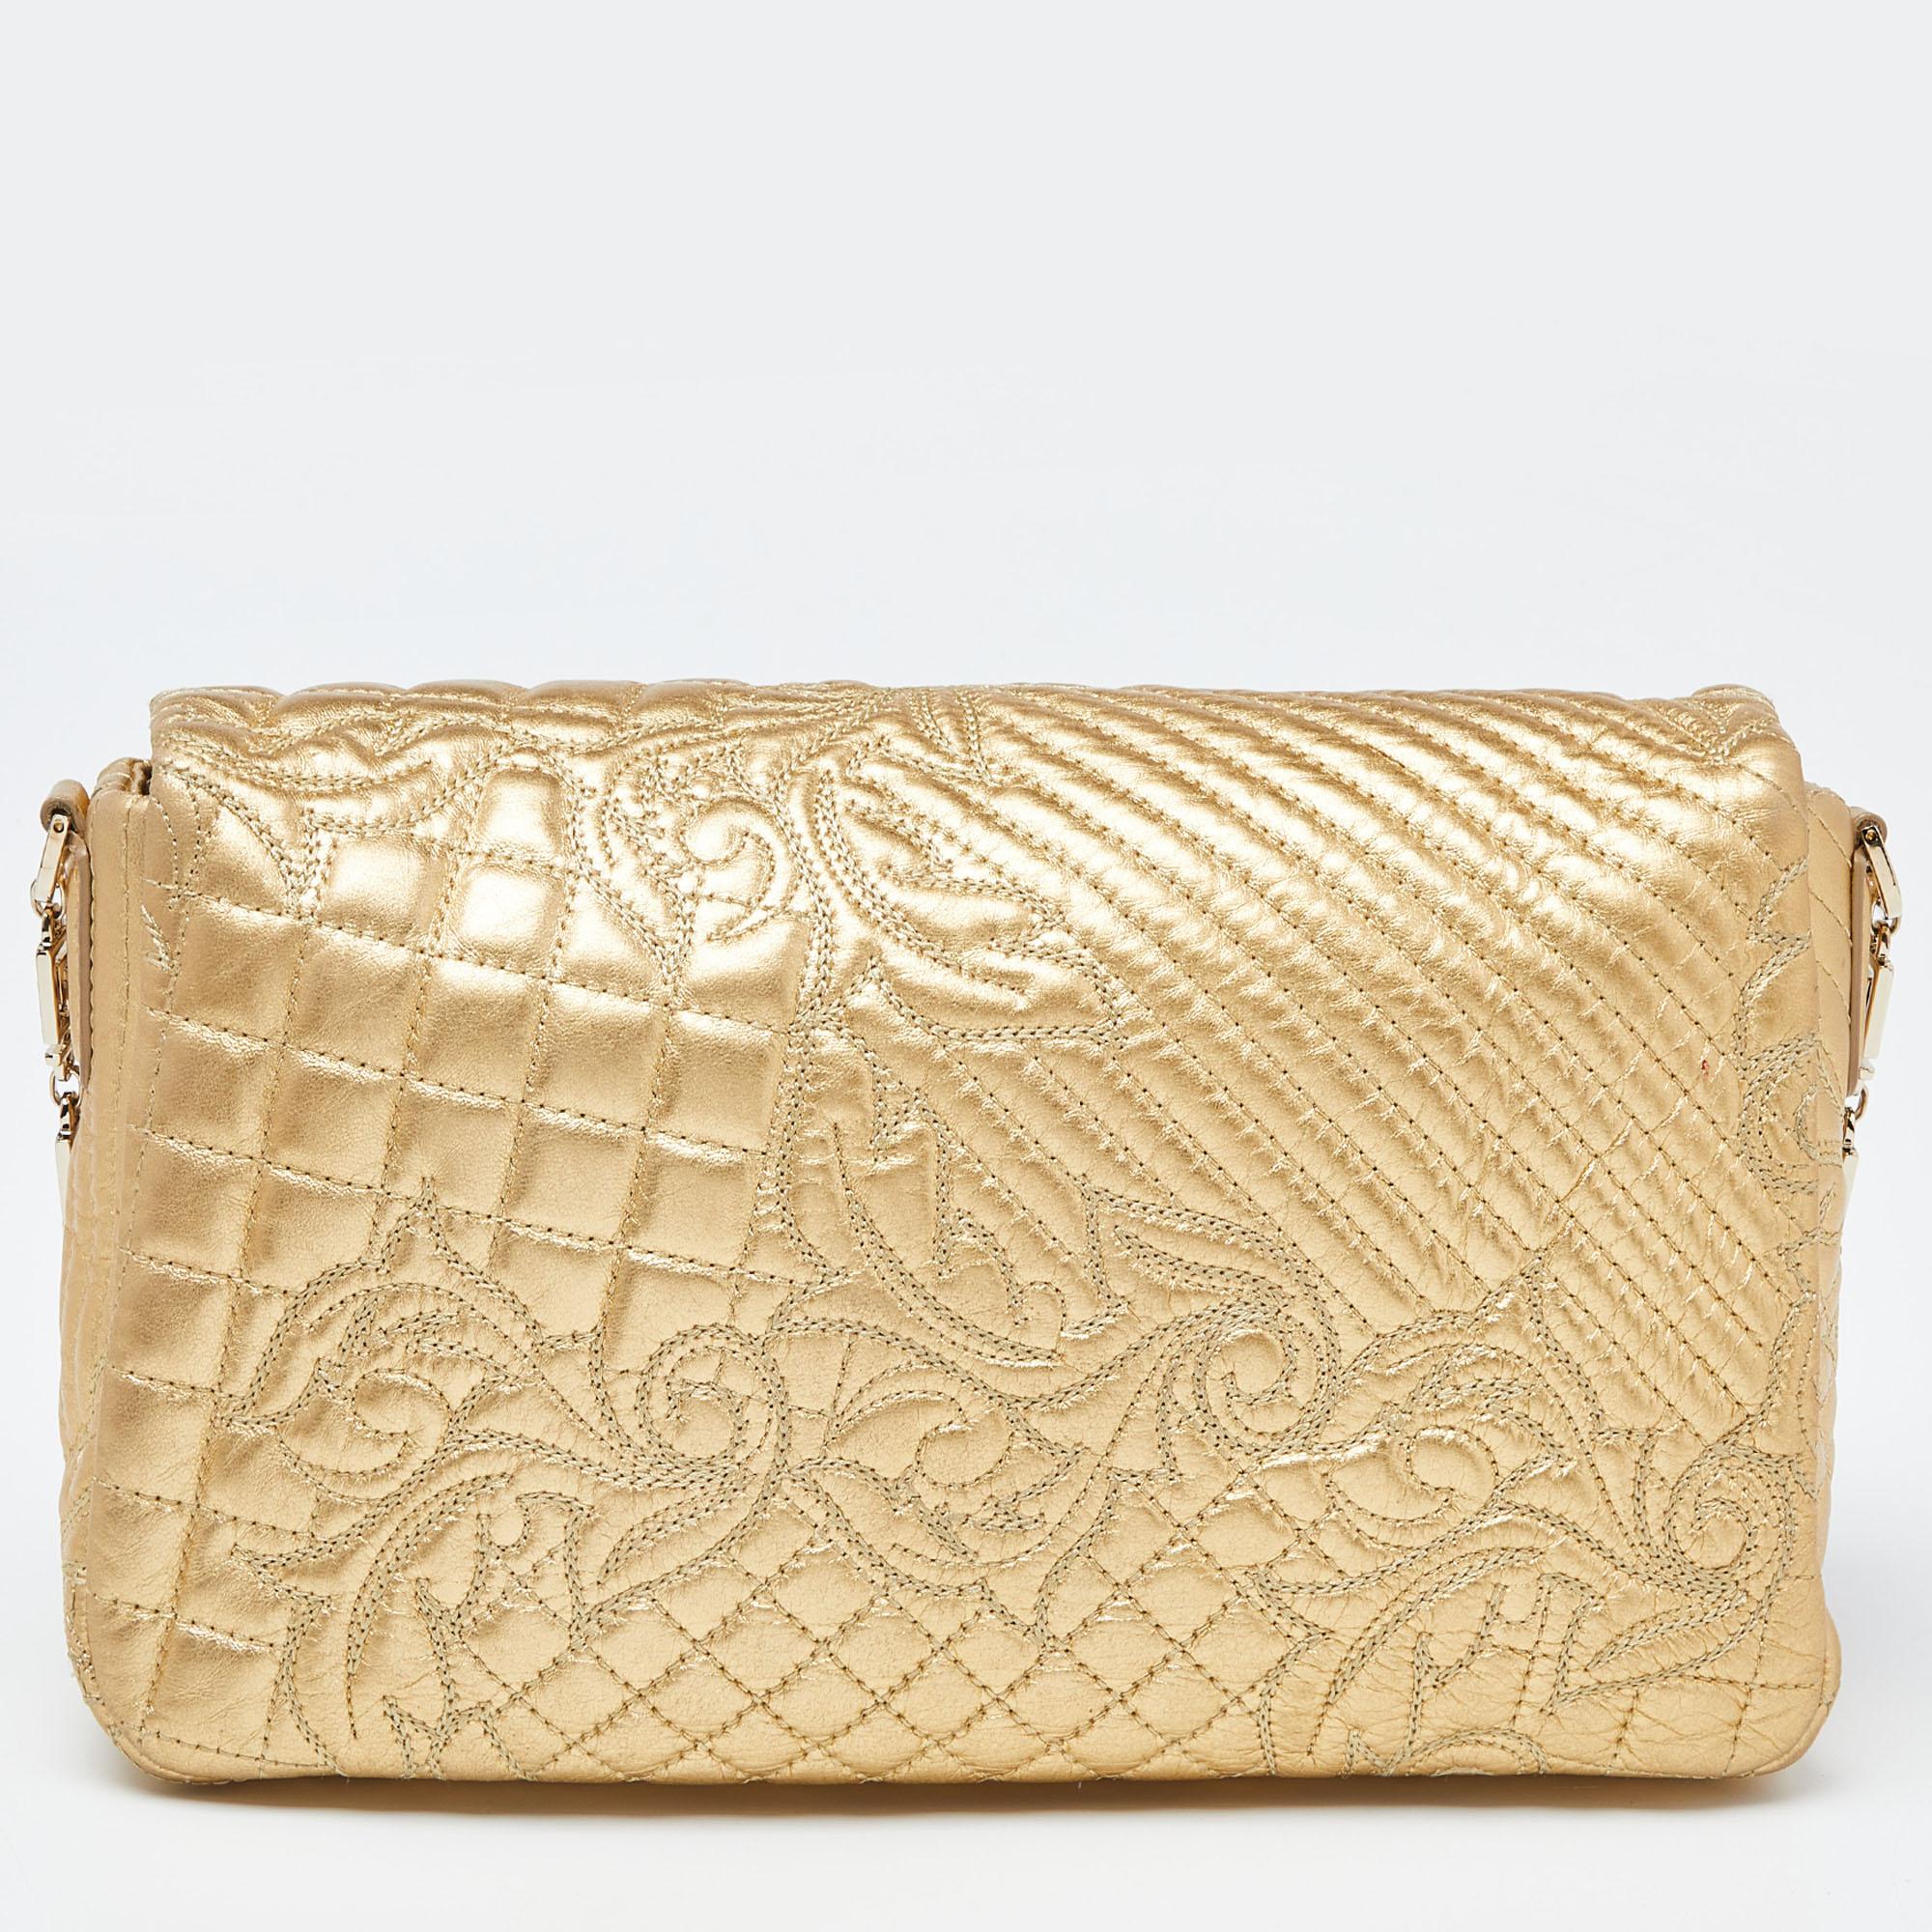 Wie wunderschön ist diese Tasche von Versace! Sie ist aus goldfarbenem Leder und goldfarbener Hardware gefertigt und besticht durch ihr außergewöhnliches Design. Das Innere ist aus Satin und wird durch Reißverschlüsse und eine Kette gehalten. Der